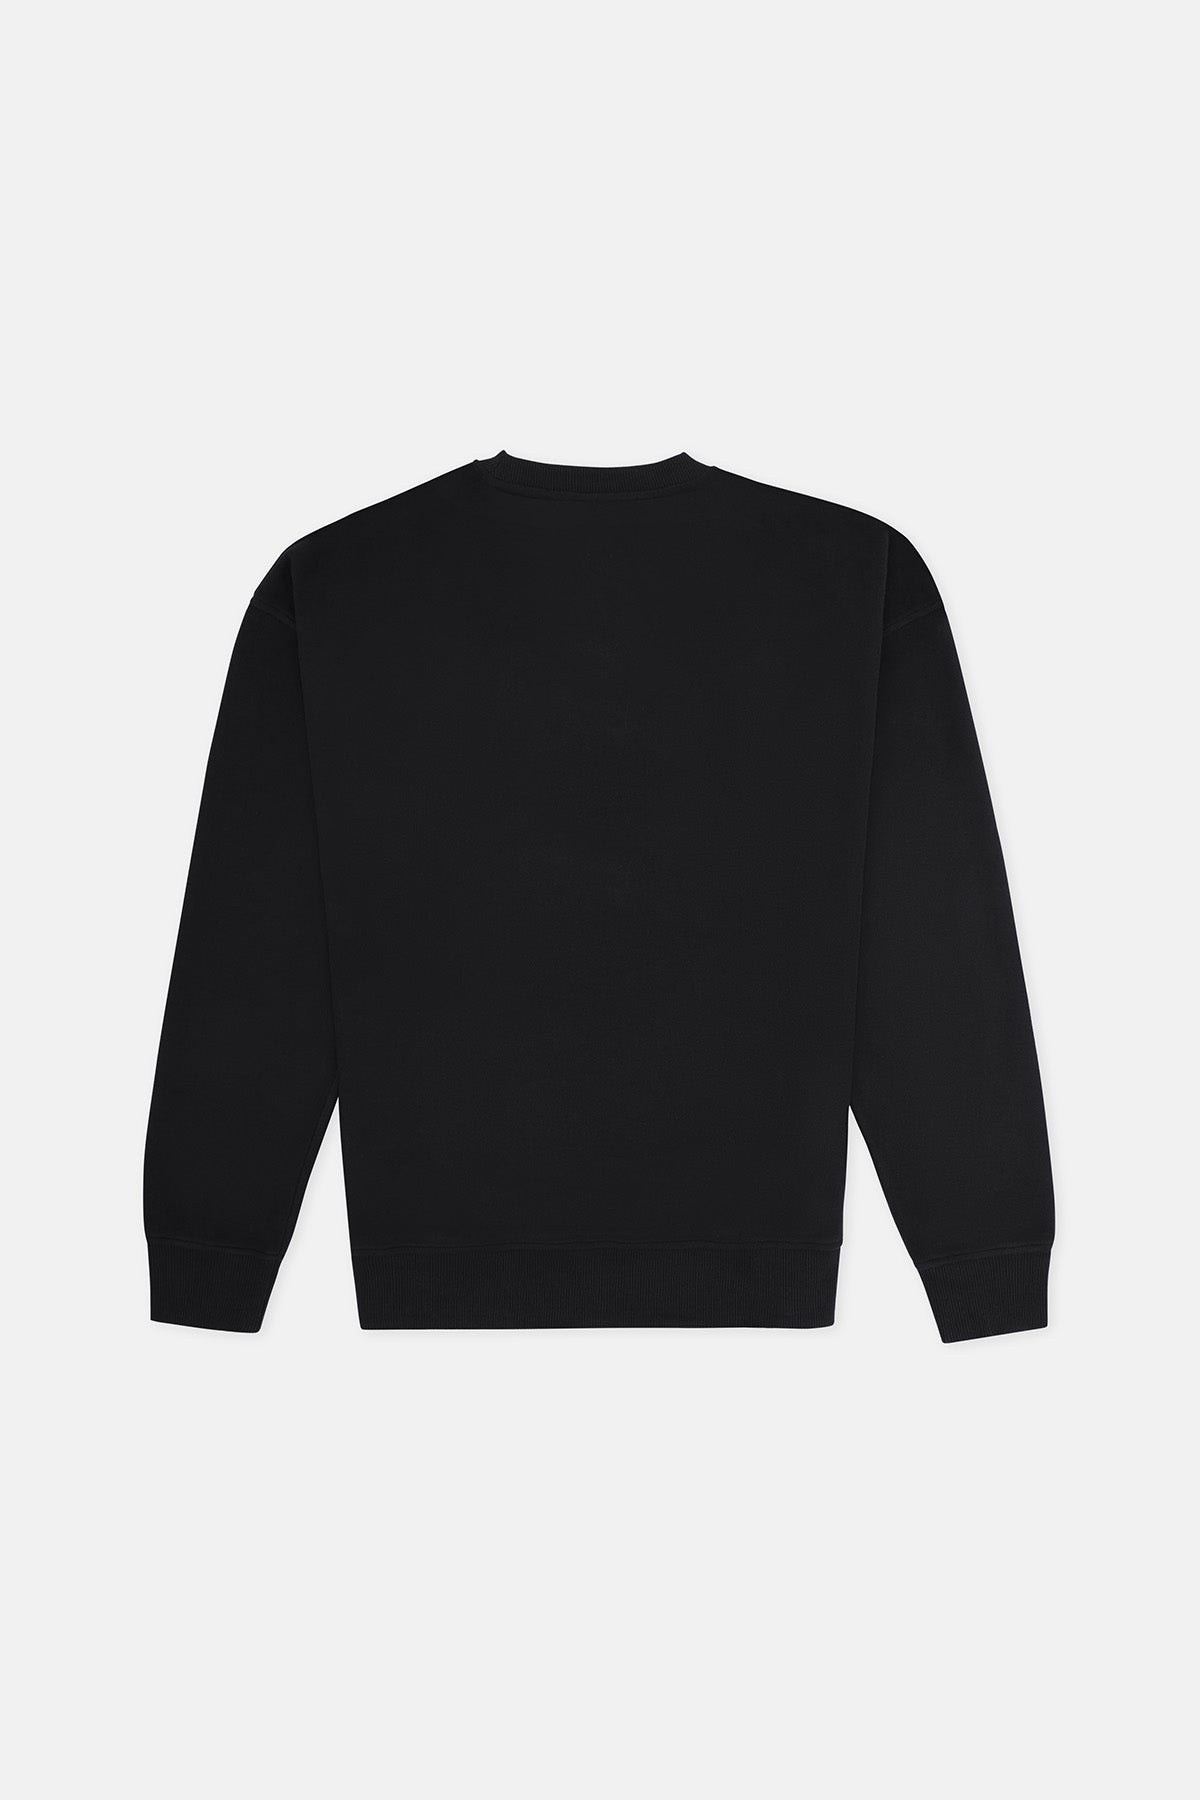 Cin Baykuşu Super Soft Sweatshirt - Siyah